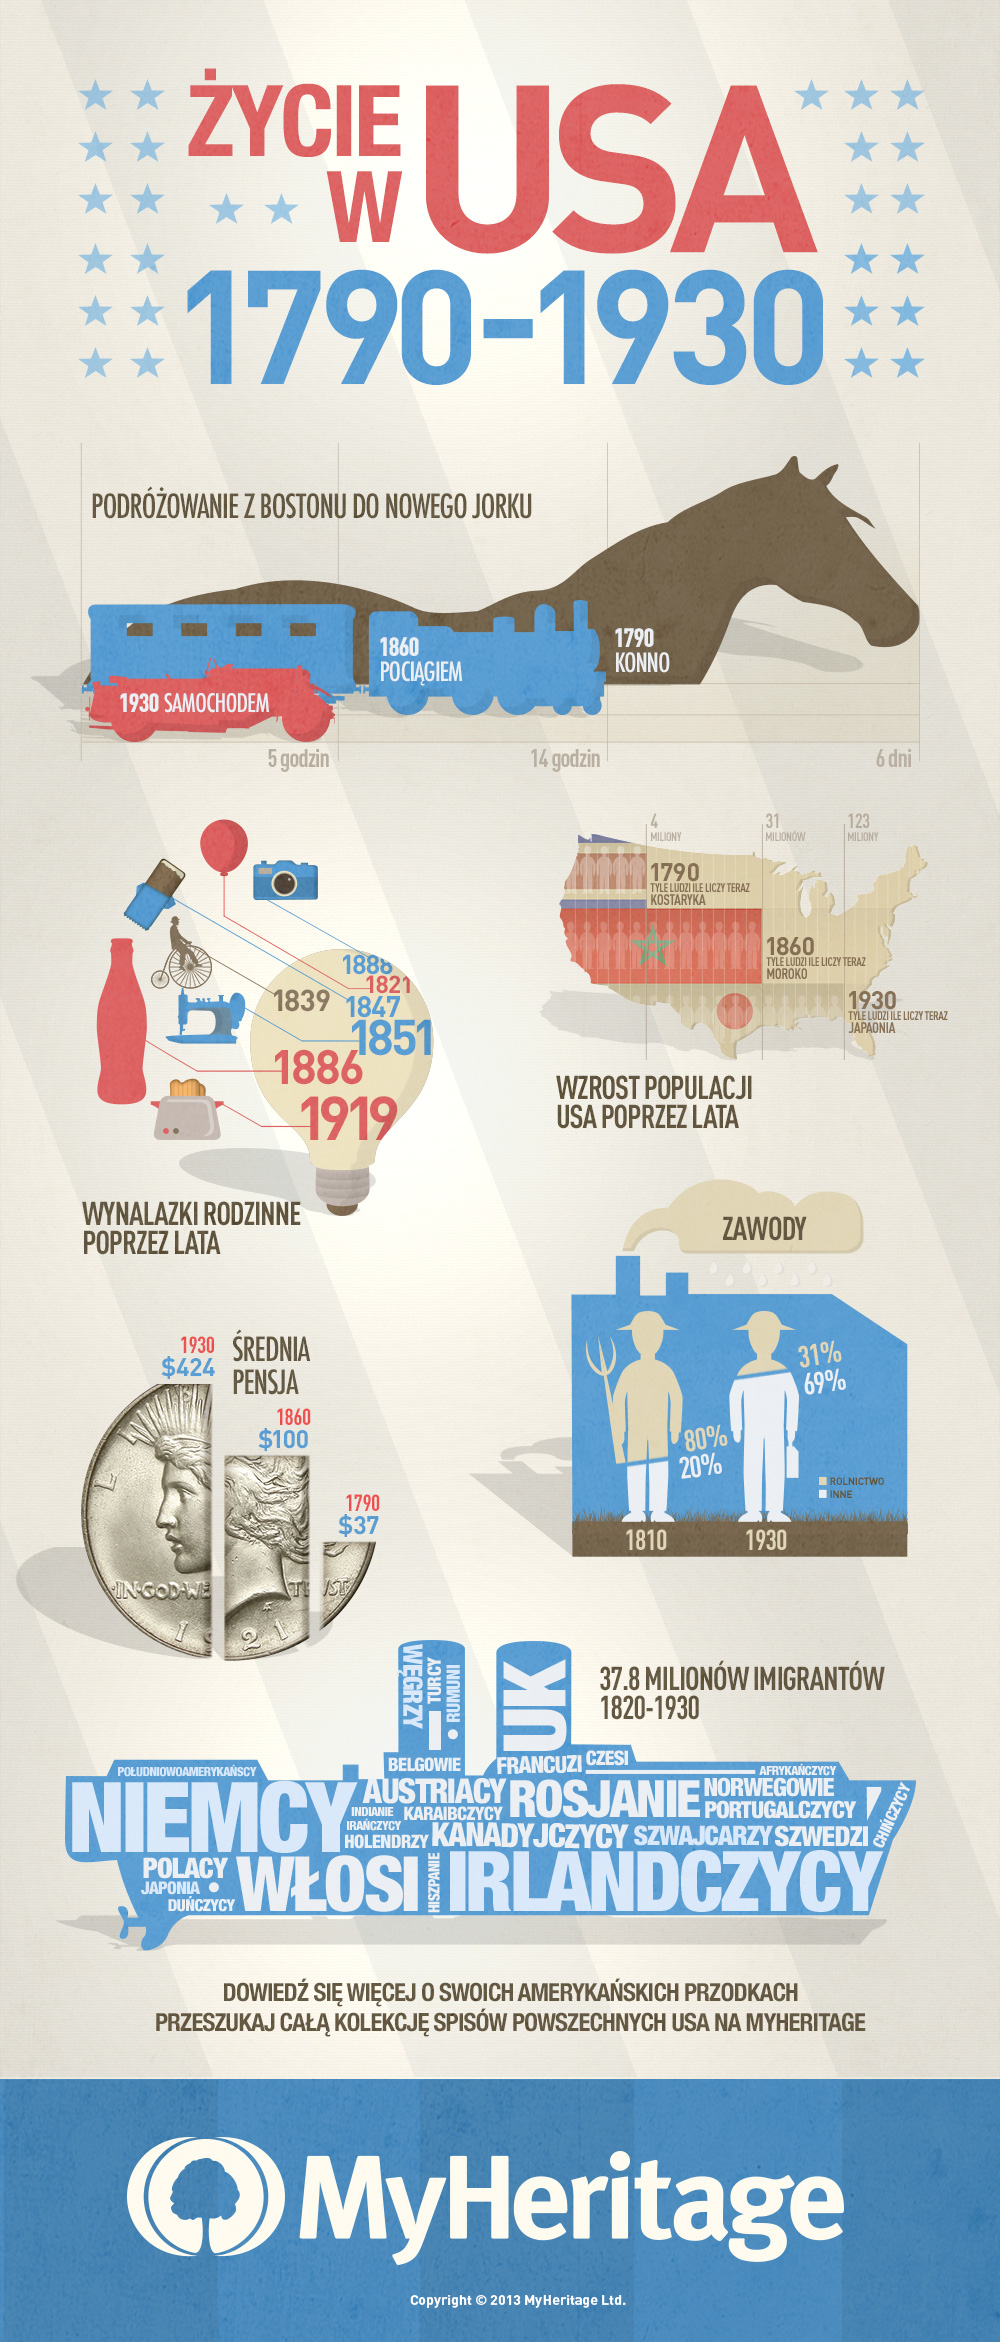 Życie w USA między 1790-1930 rokiem (kliknij, aby powiększyć)